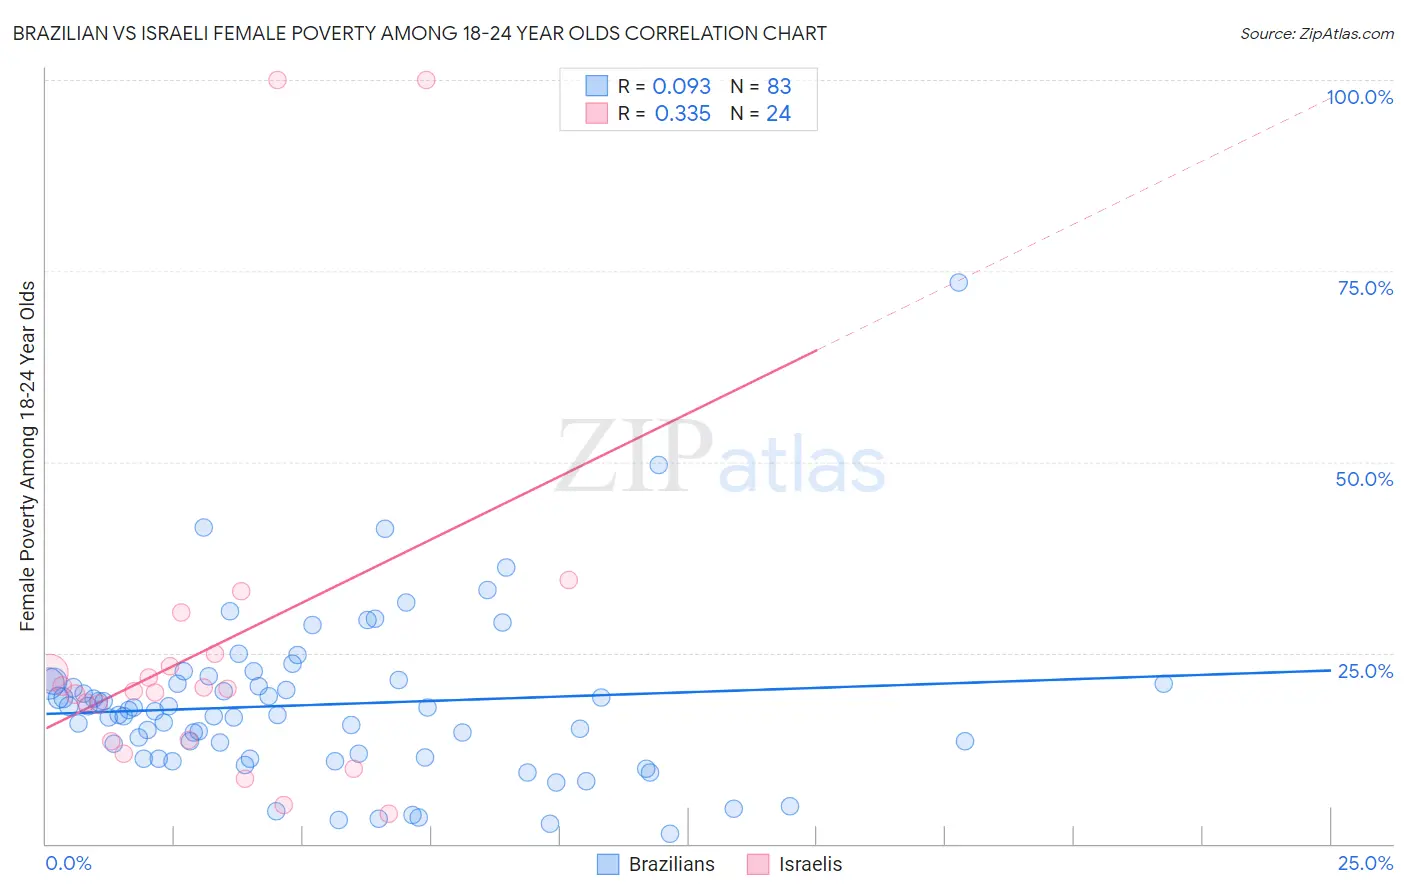 Brazilian vs Israeli Female Poverty Among 18-24 Year Olds